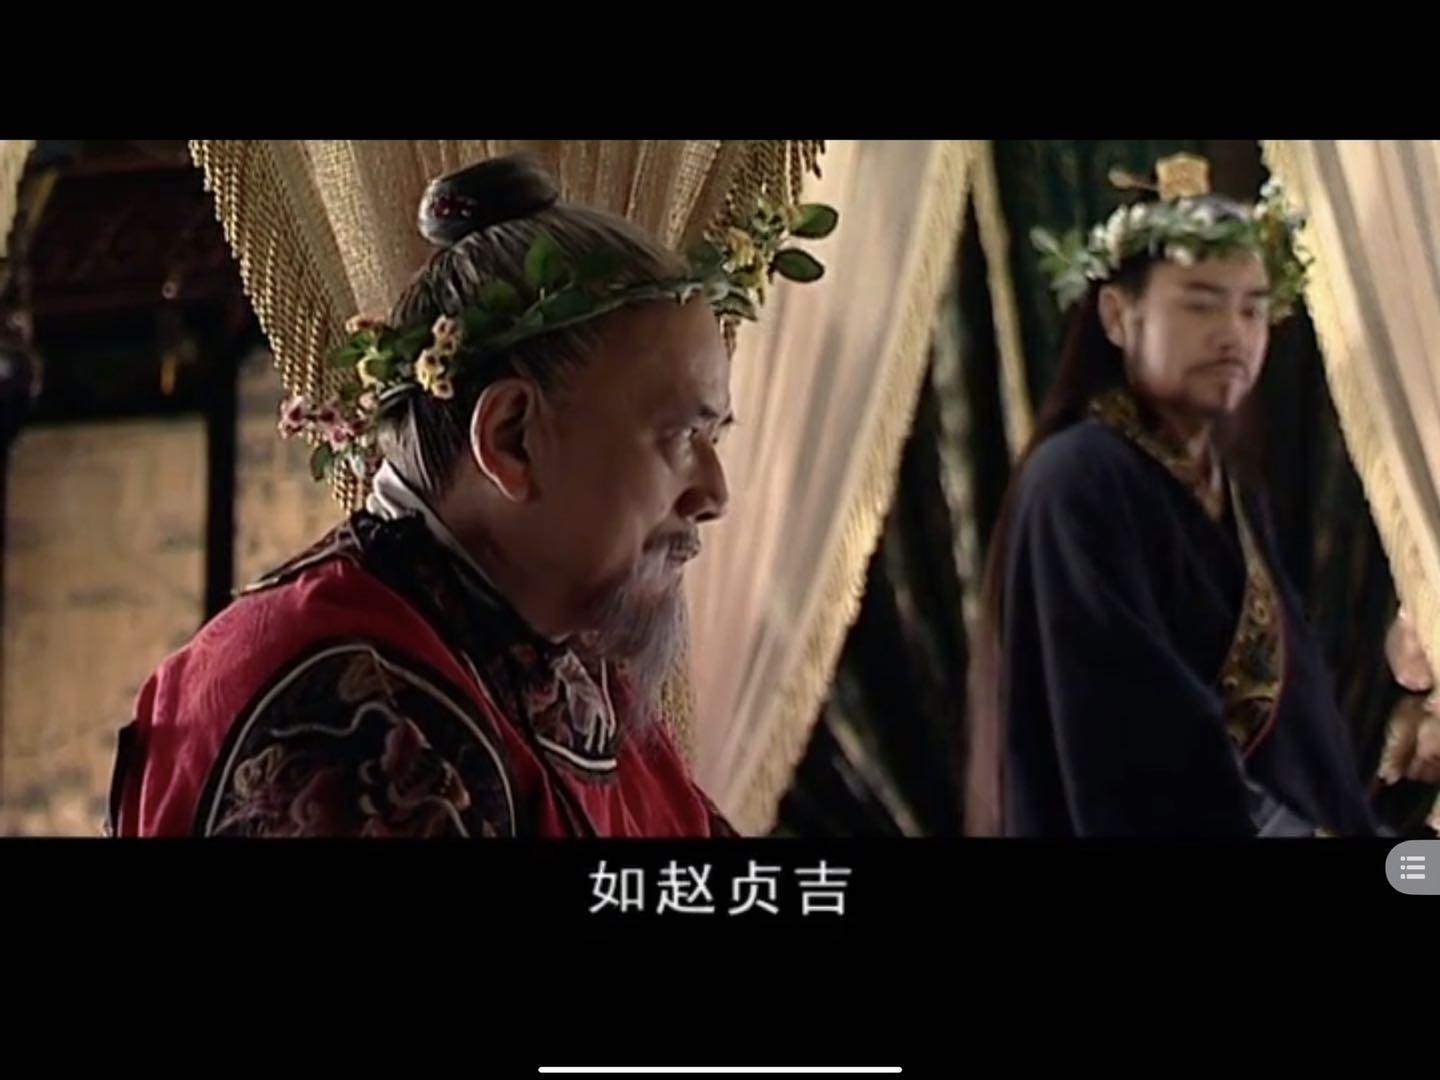 为什么有人特别喜欢《大明王朝1566》中的赵贞吉? 